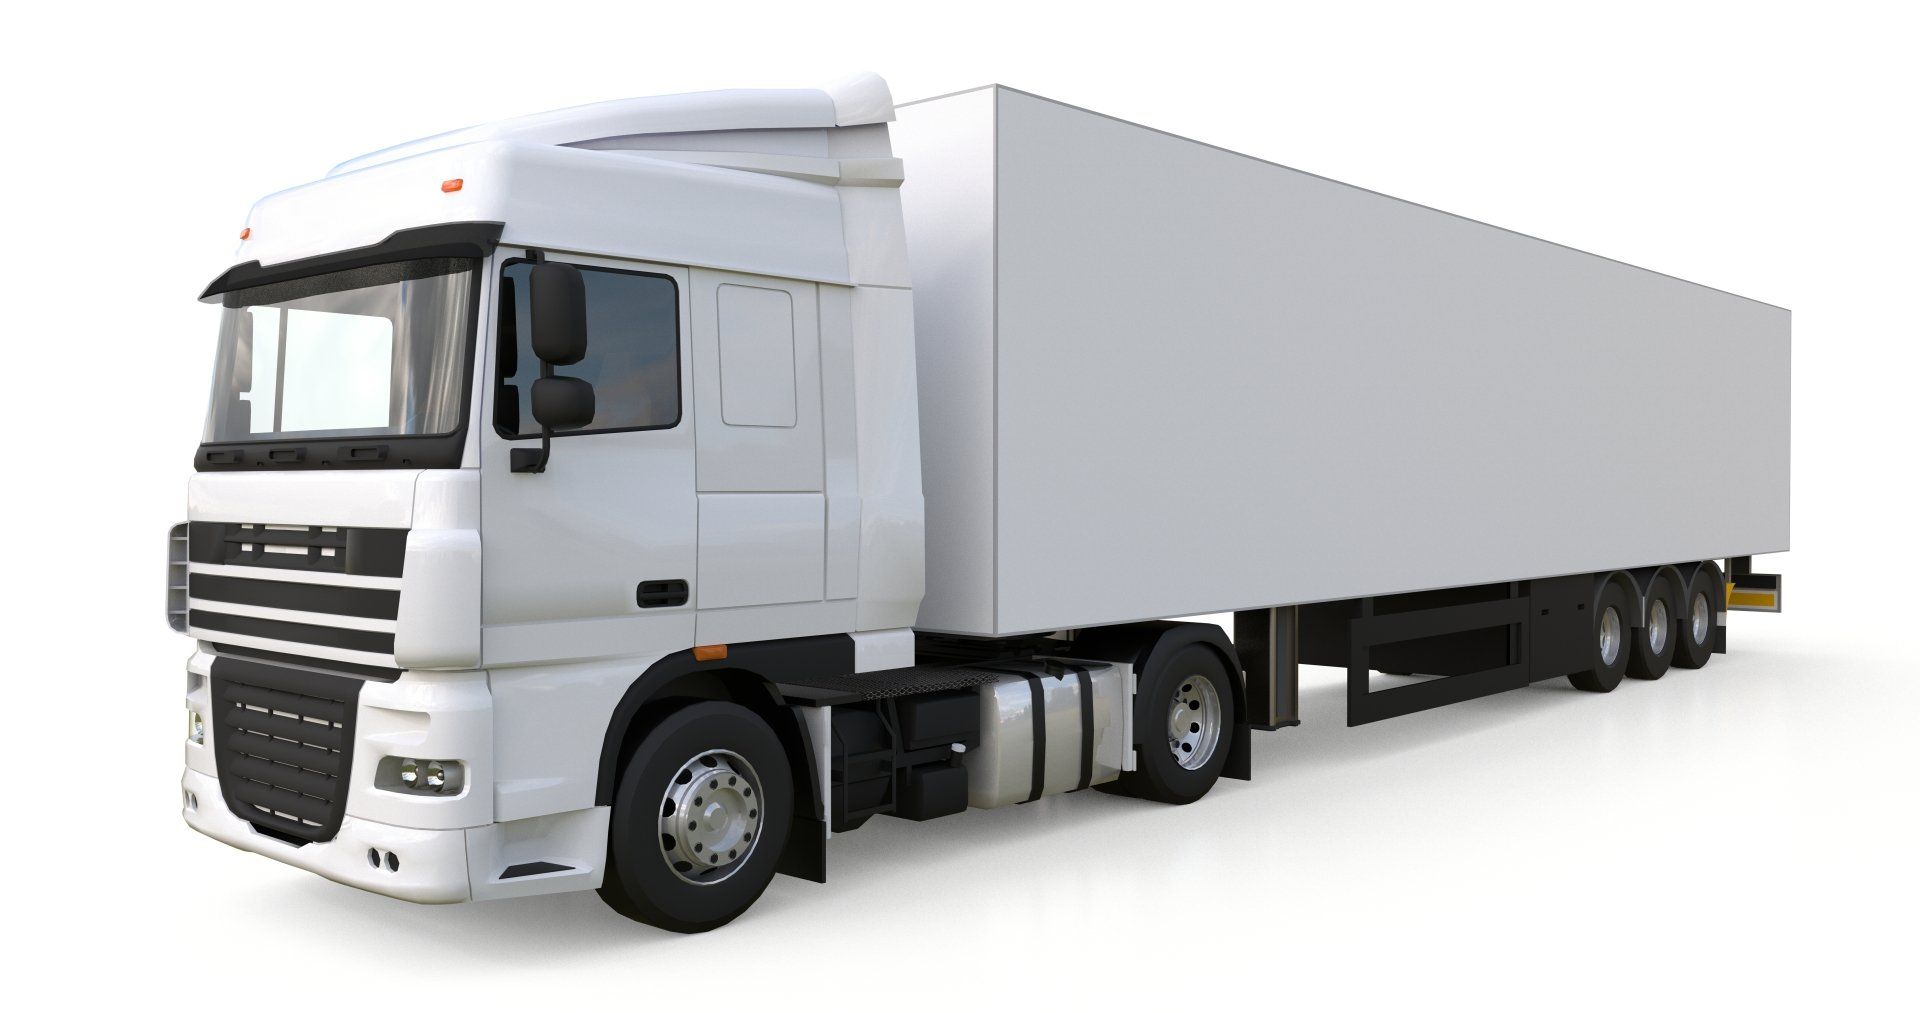 Large Trucks for the bigger moves - Camiones grandes para transportar los trabajo más grandes